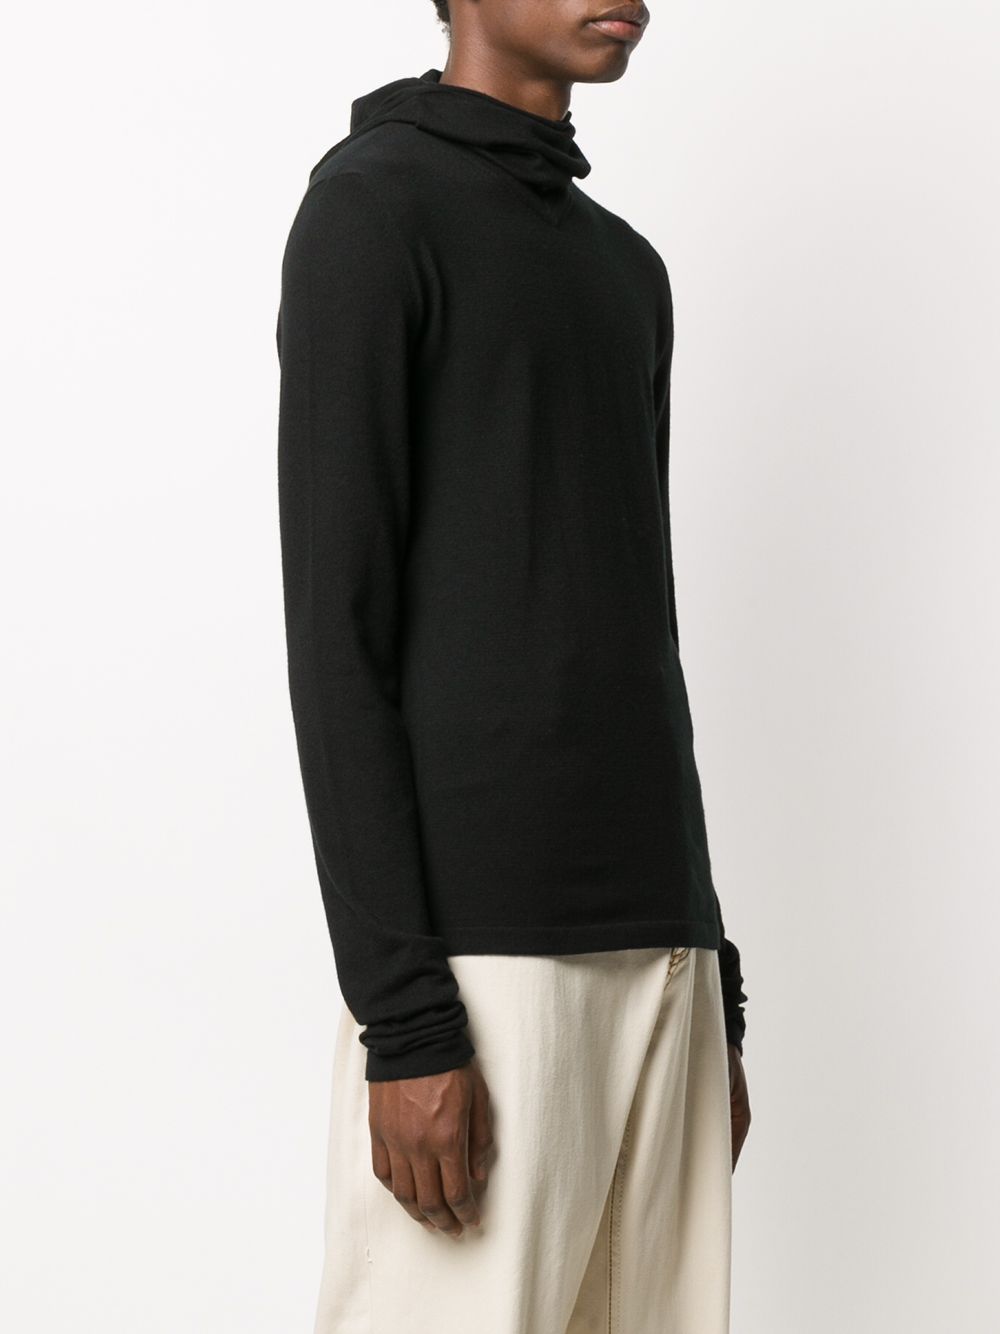 фото Bottega veneta свитер тонкой вязки с высоким воротником